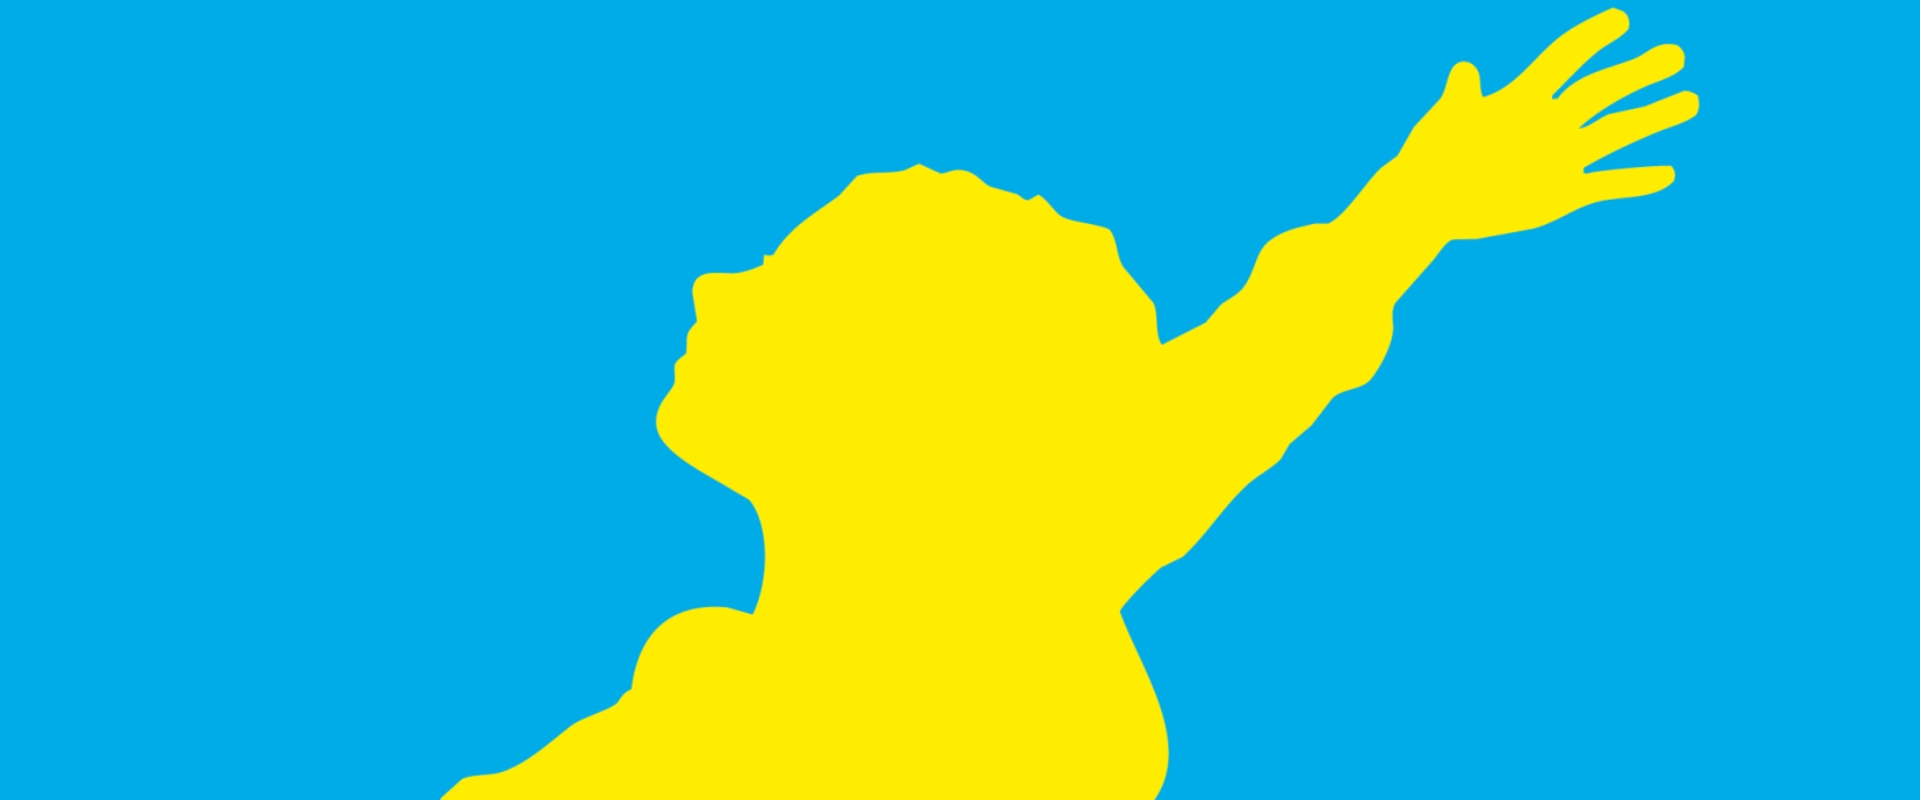 Gelbe Figur auf blauem Hintergrund.